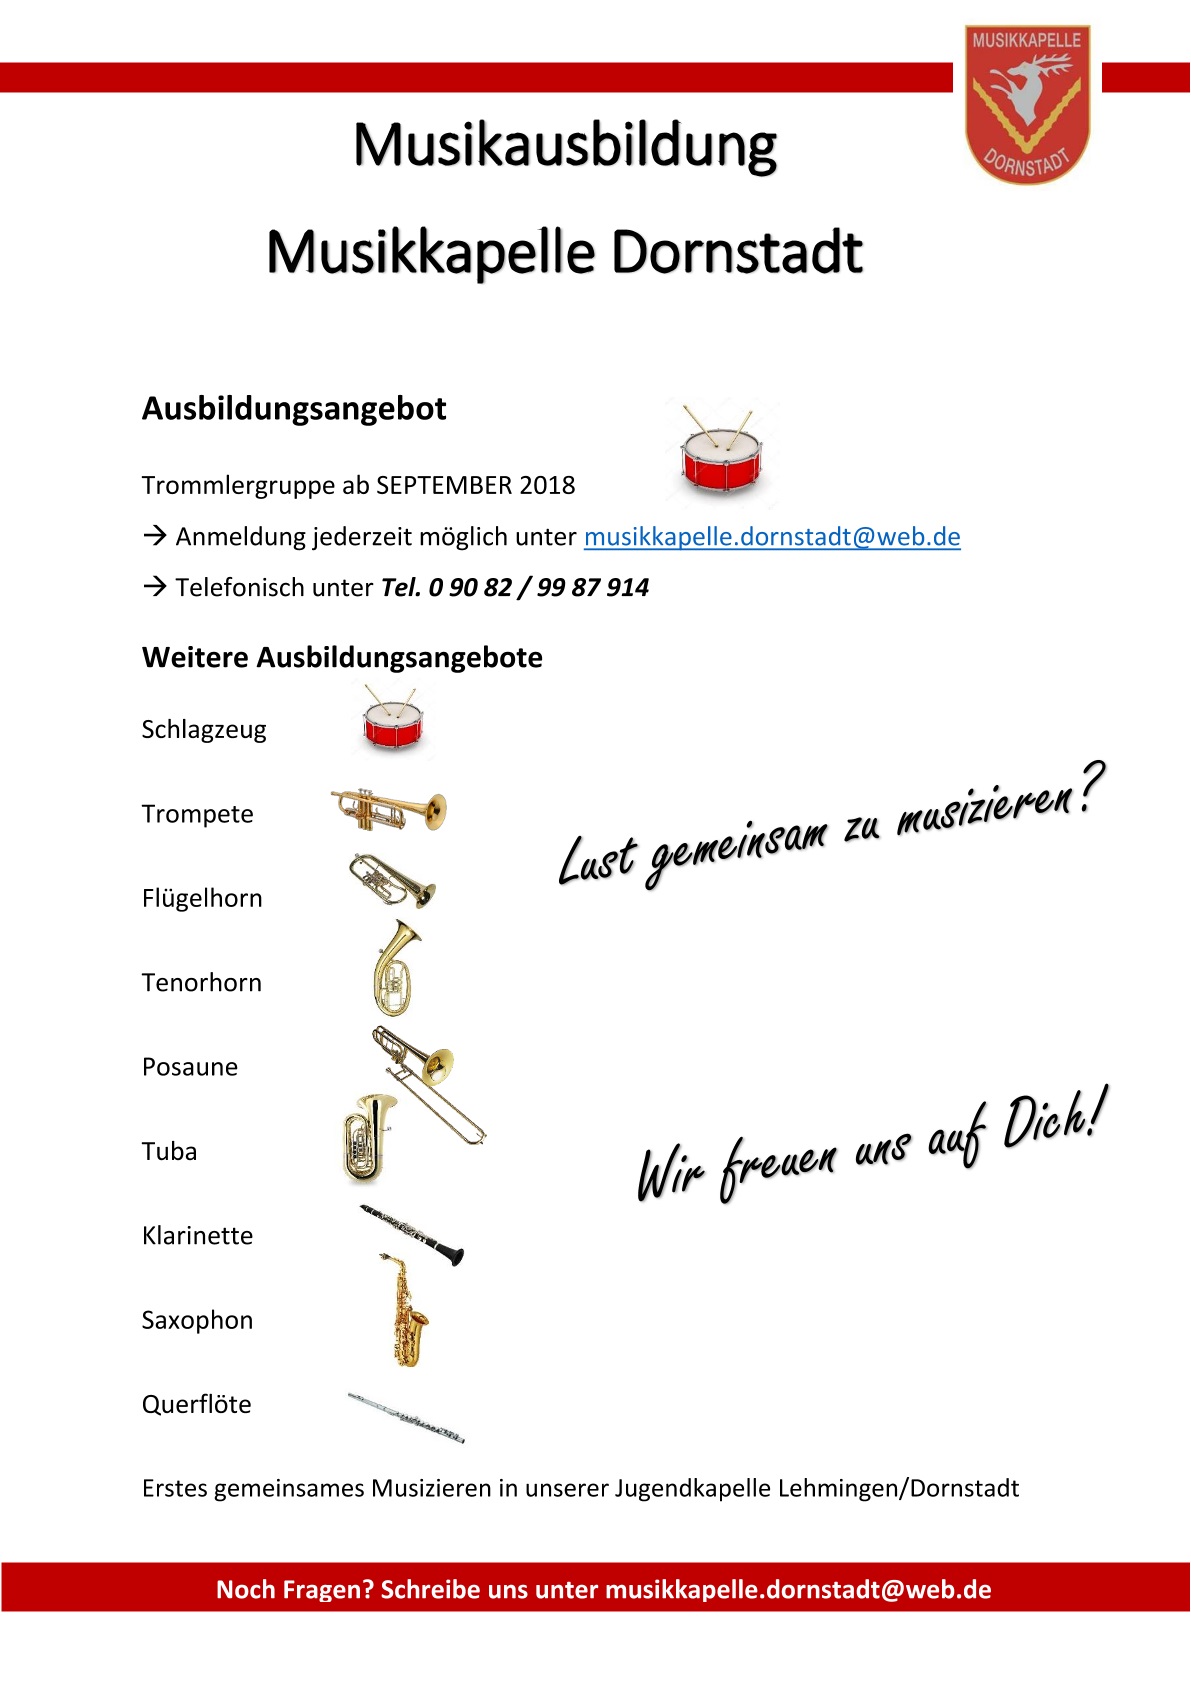 (c) Musikkapelle Dornstadt - Ausbildungsangebot